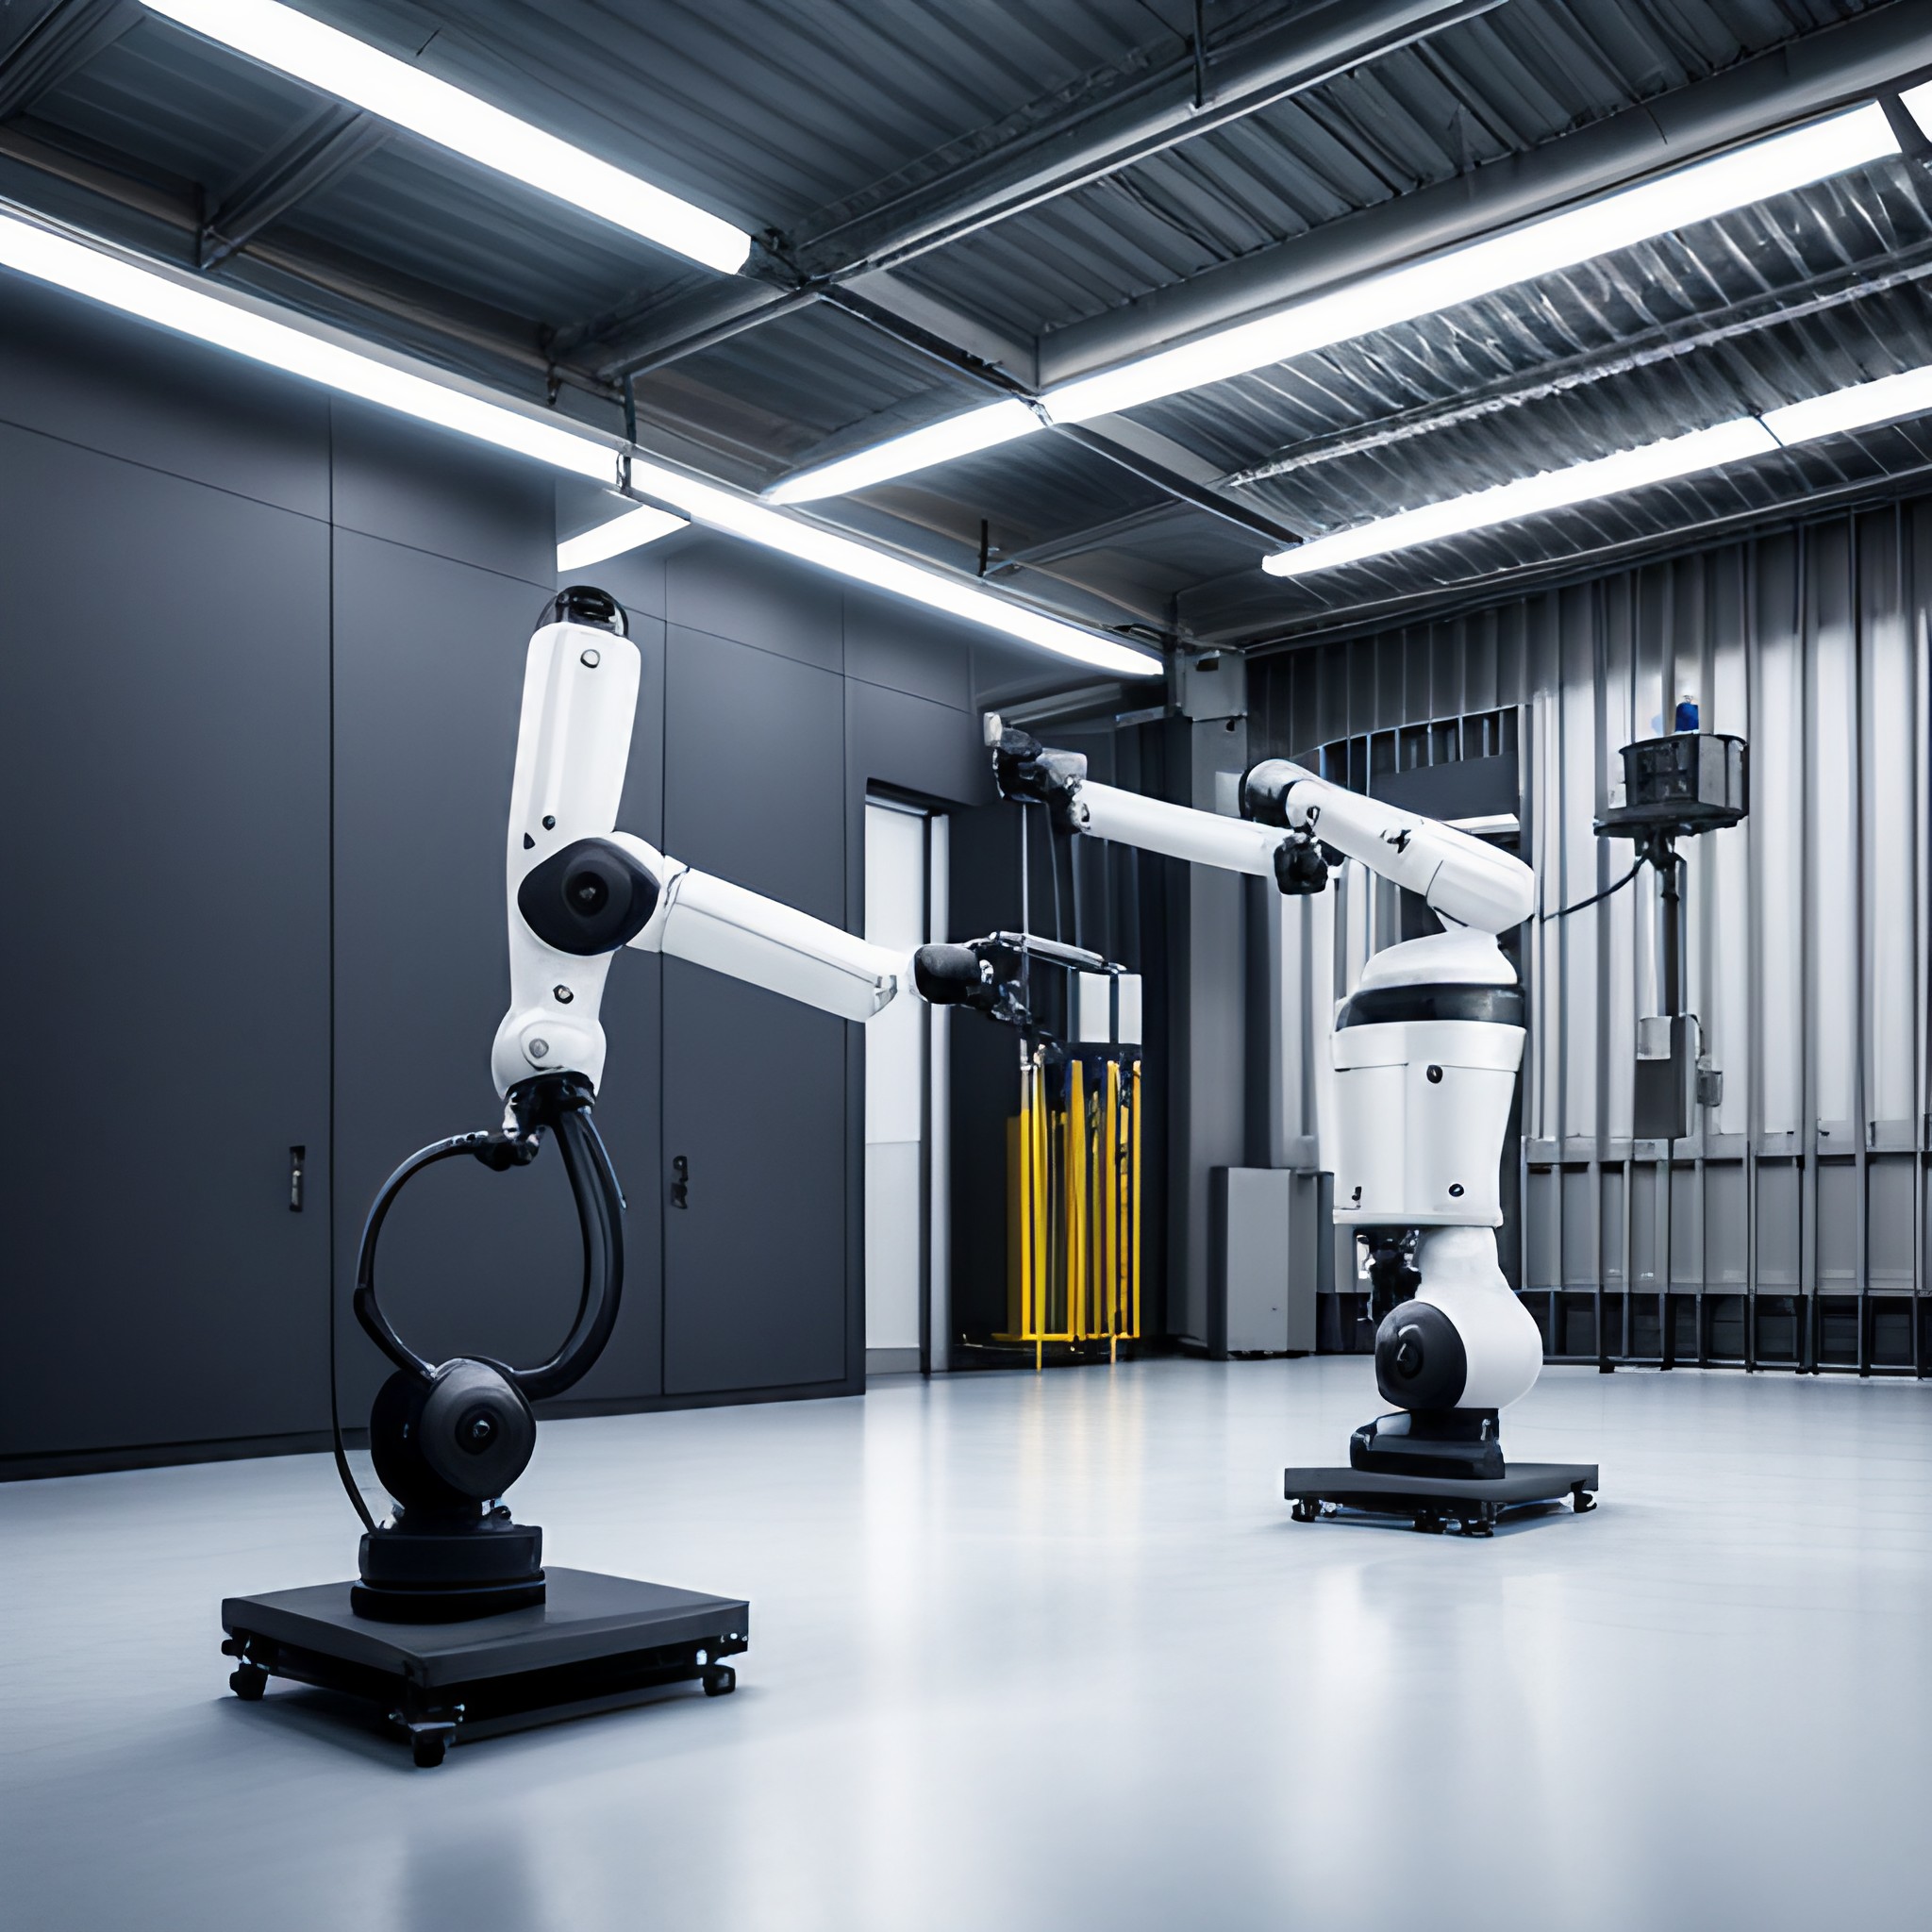 Liste des fabricants robotique industrielle : fournisseurs, intégrateurs